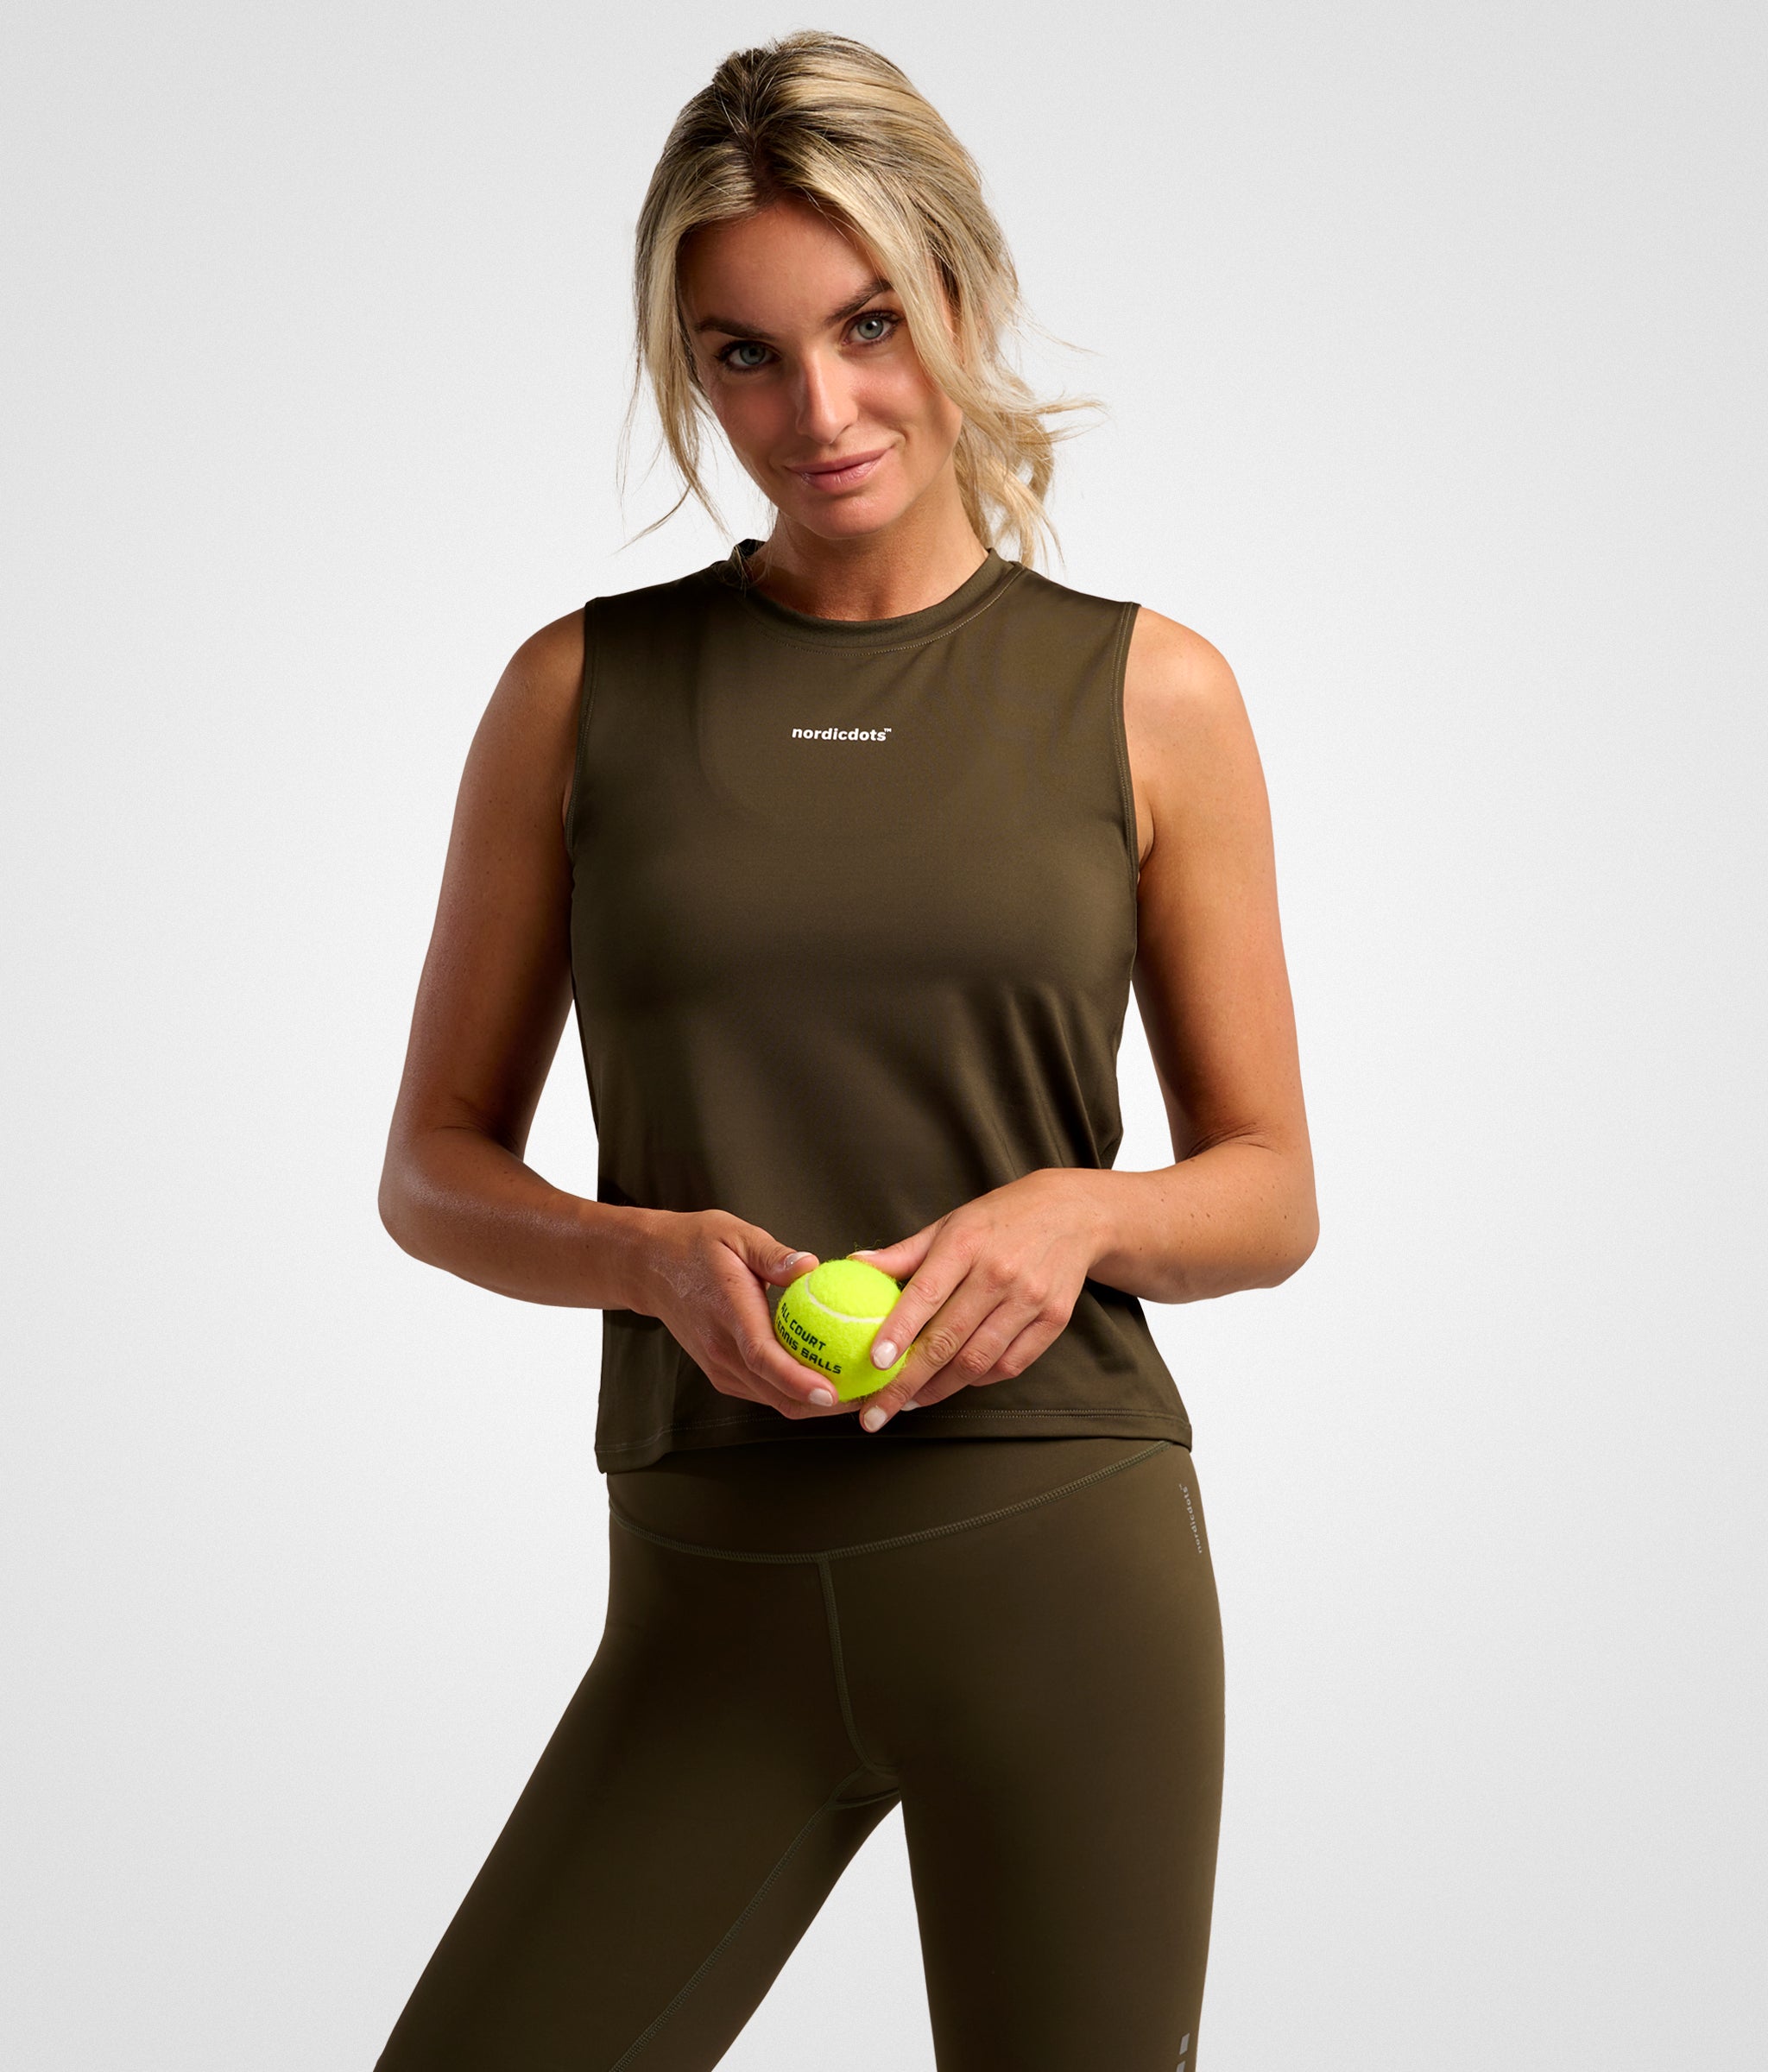 nordicdots elegance tank-top olive green tennis padel women nordicdots.com